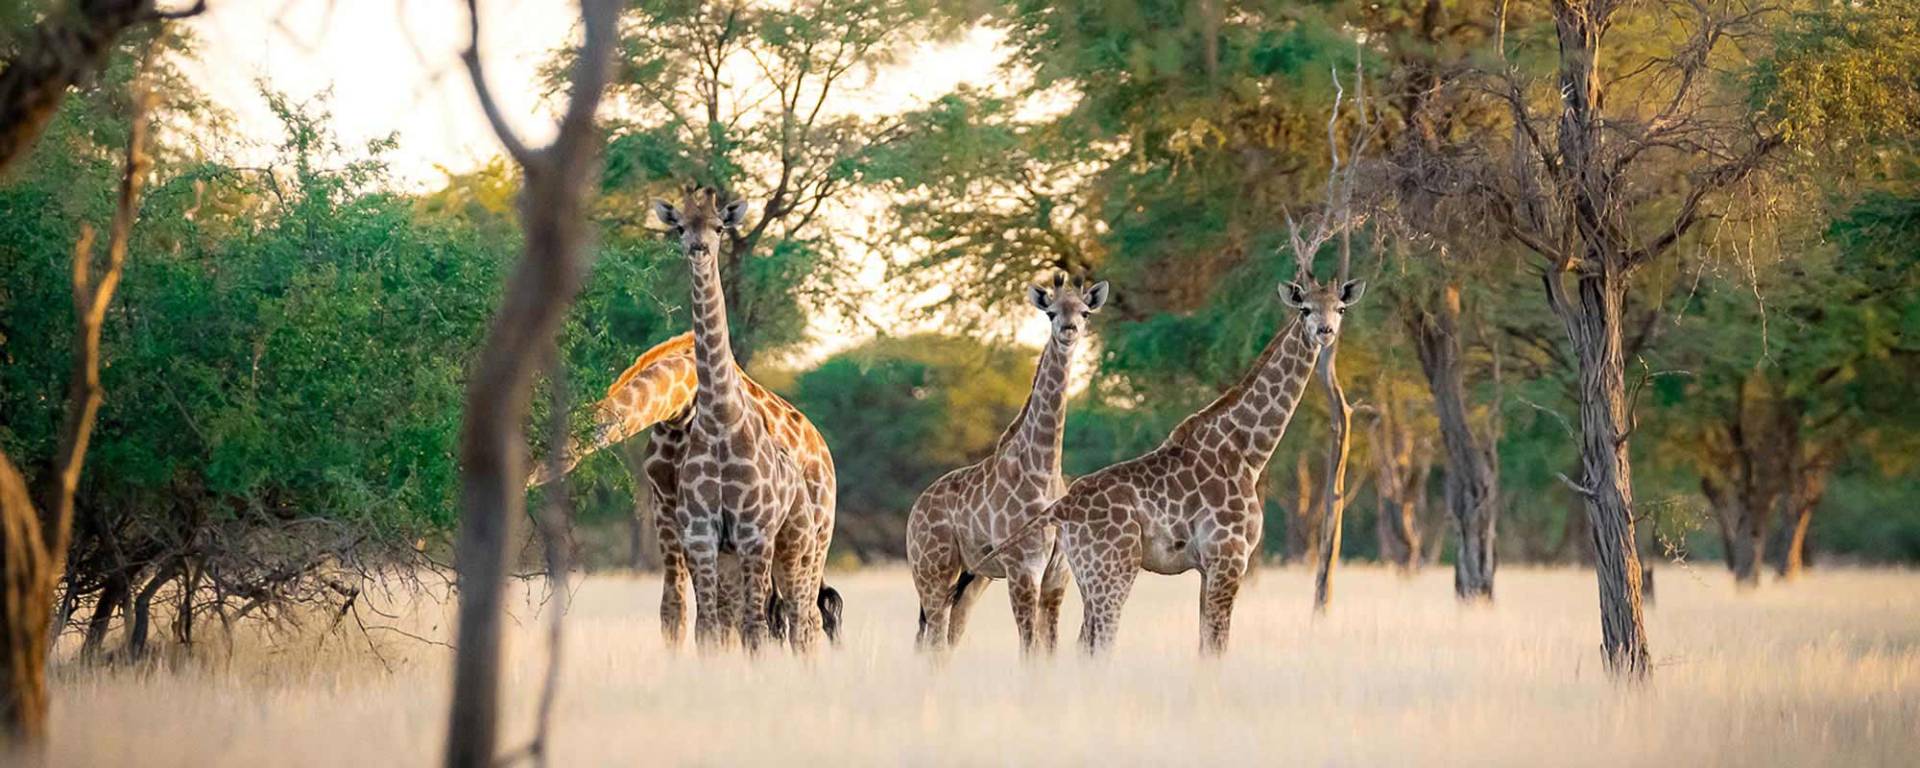 Giraffes at Kuzikus Wildlife Reserve